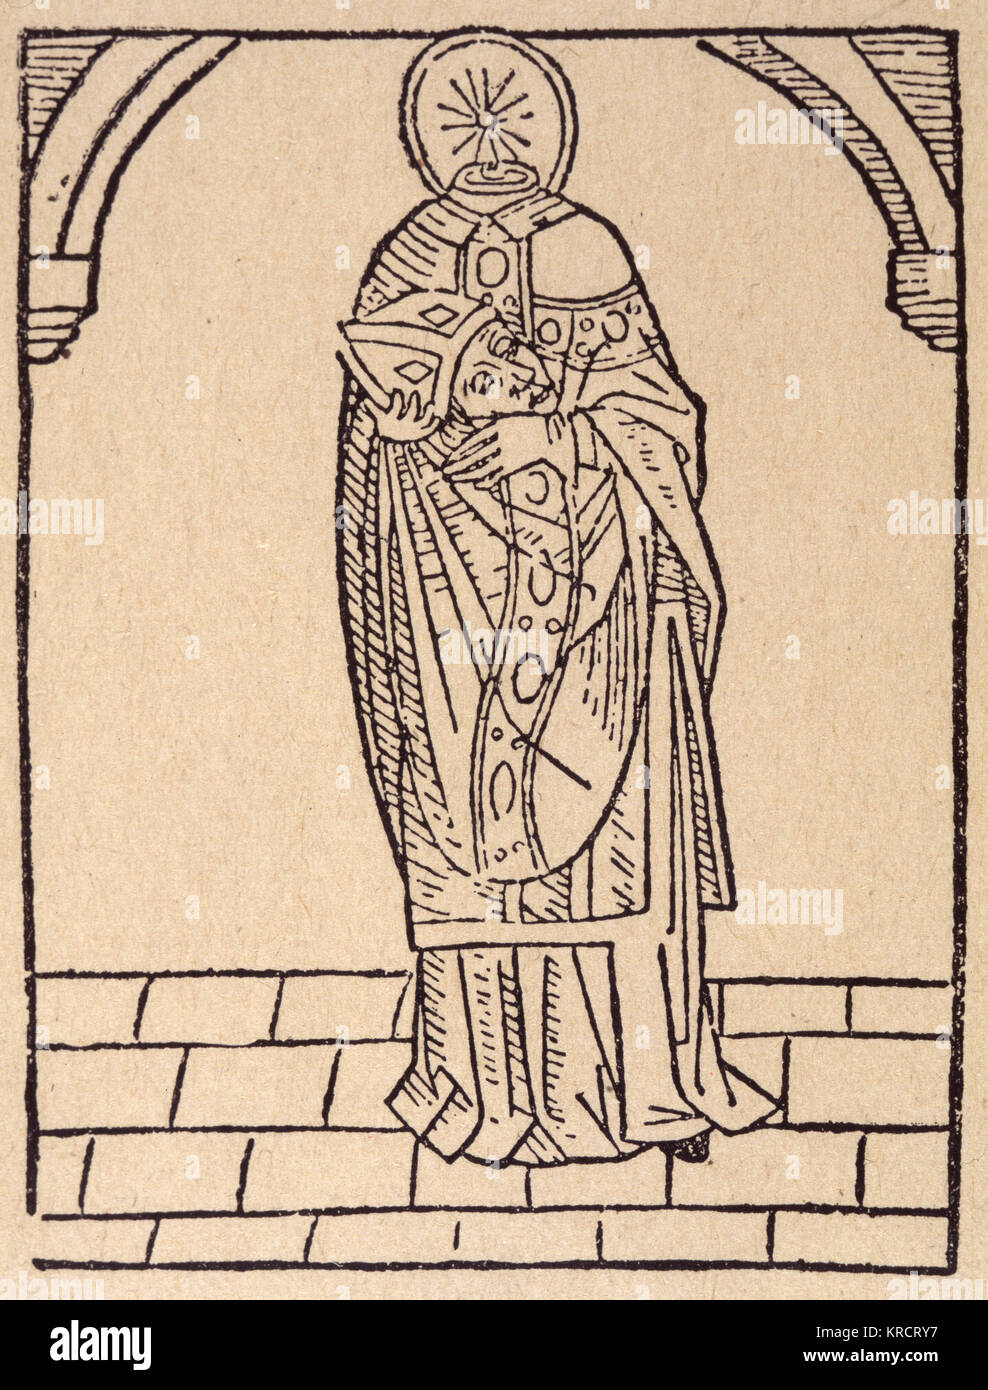 SAINT DENIS primo vescovo di Parigi, martirizzato e sepolto a Saint Denis ; perché la sua testa era stata tagliata, egli è generalmente illustrato che lo trasporta Data: morì circa 258 Foto Stock